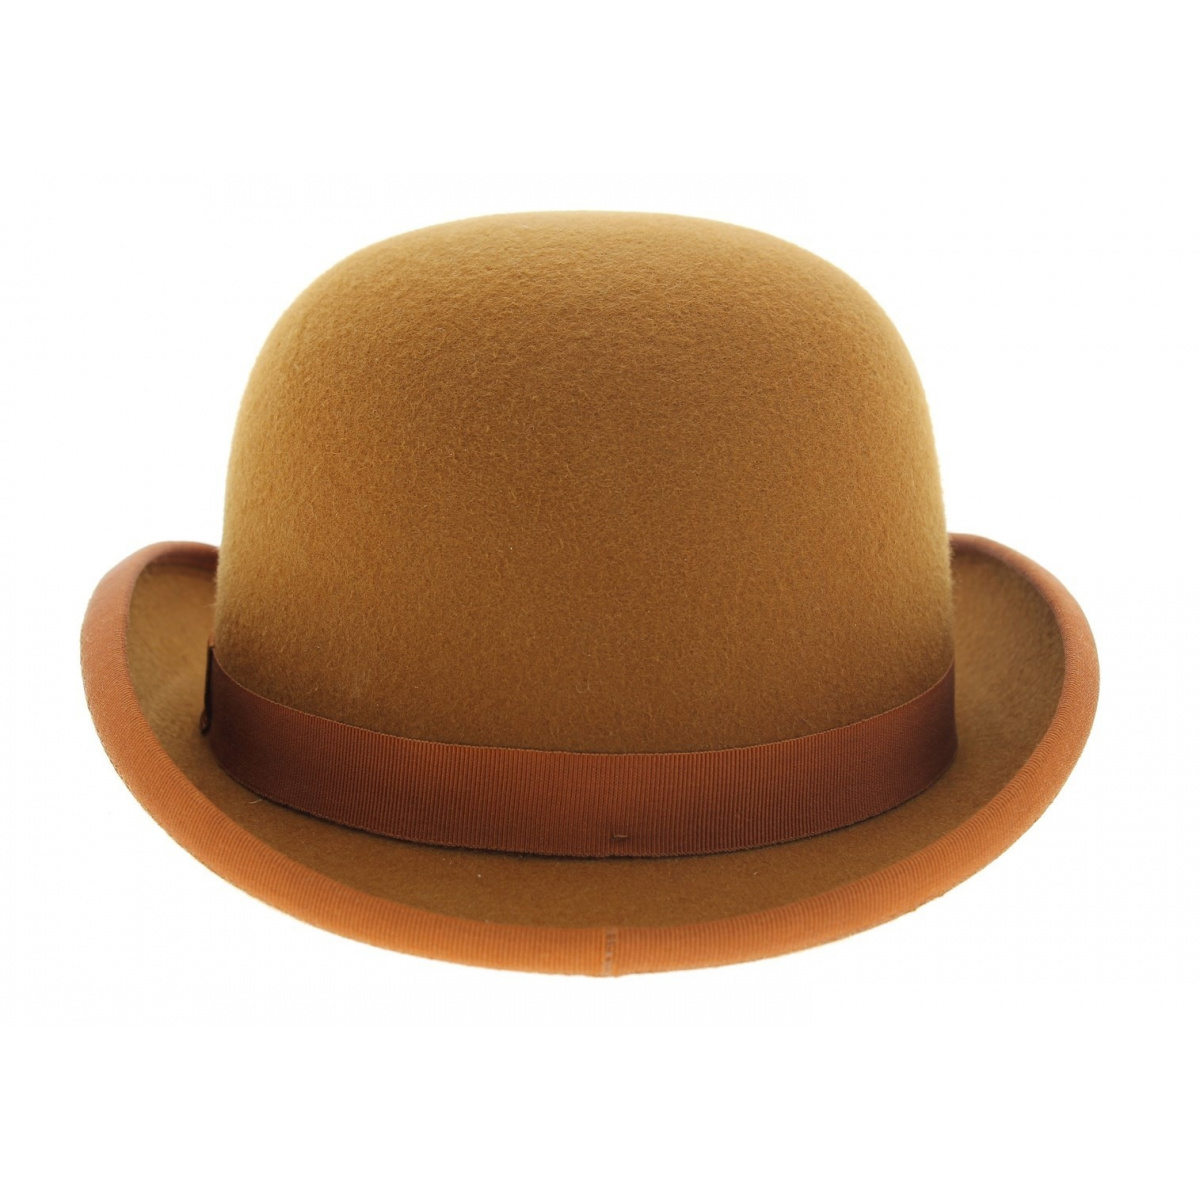 L'authentique chapeau melon, pour les hommes à la recherche d'un